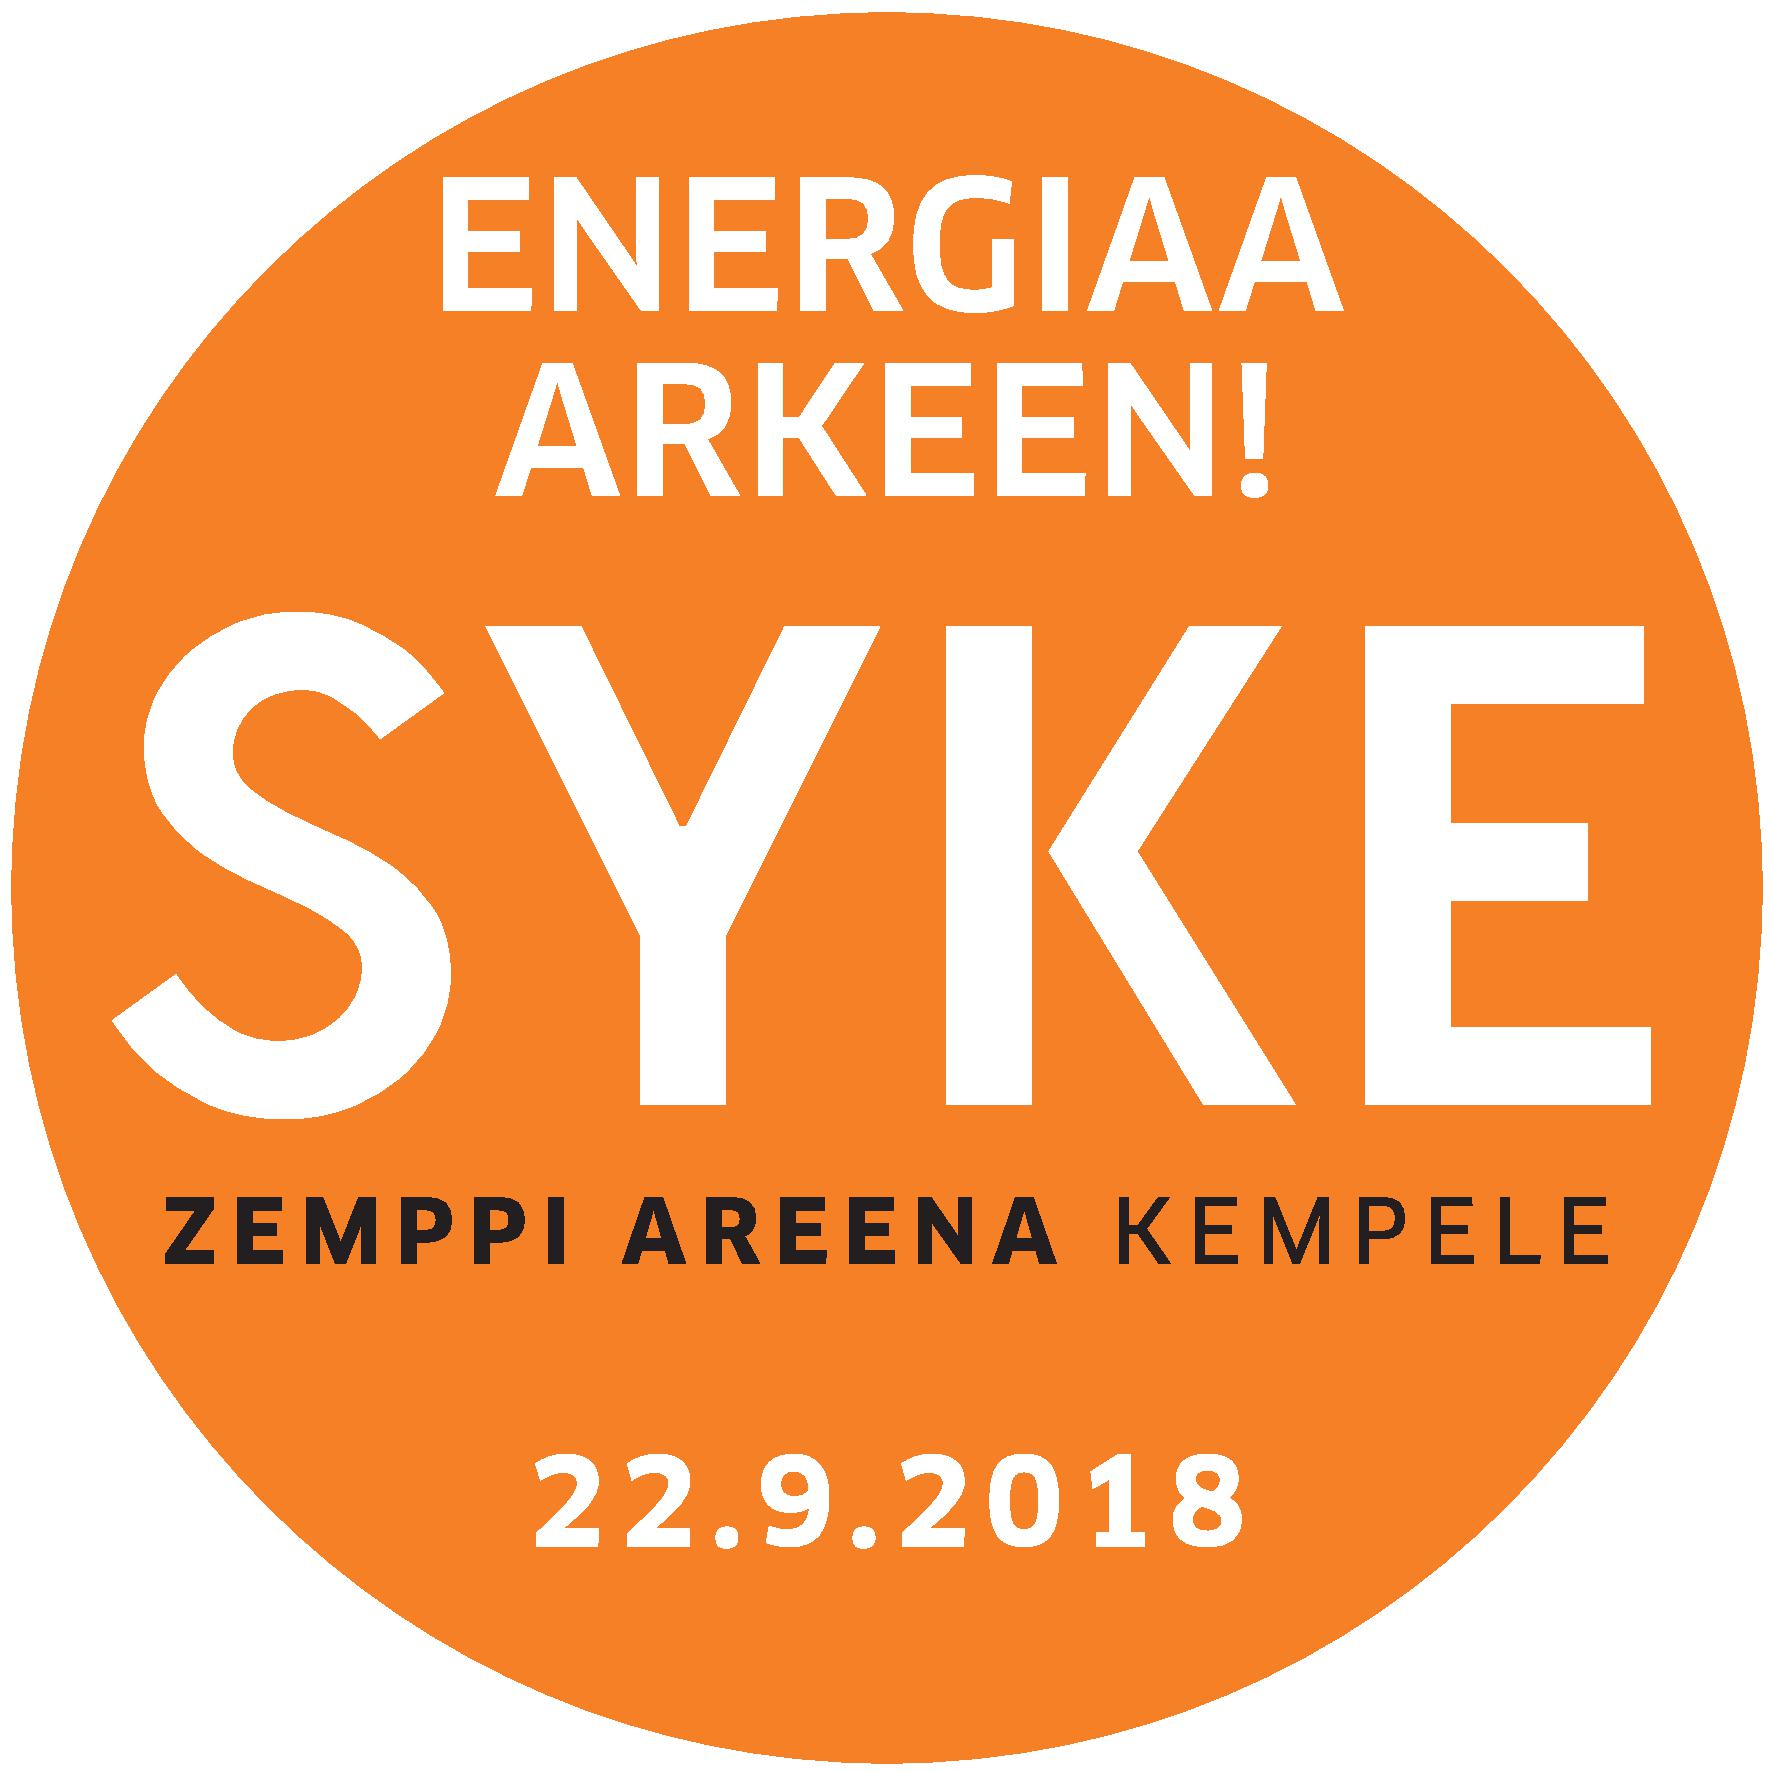 Syke-Energiaa arkeen -tapahtuma Zemppi Areenalla 22.9.2018